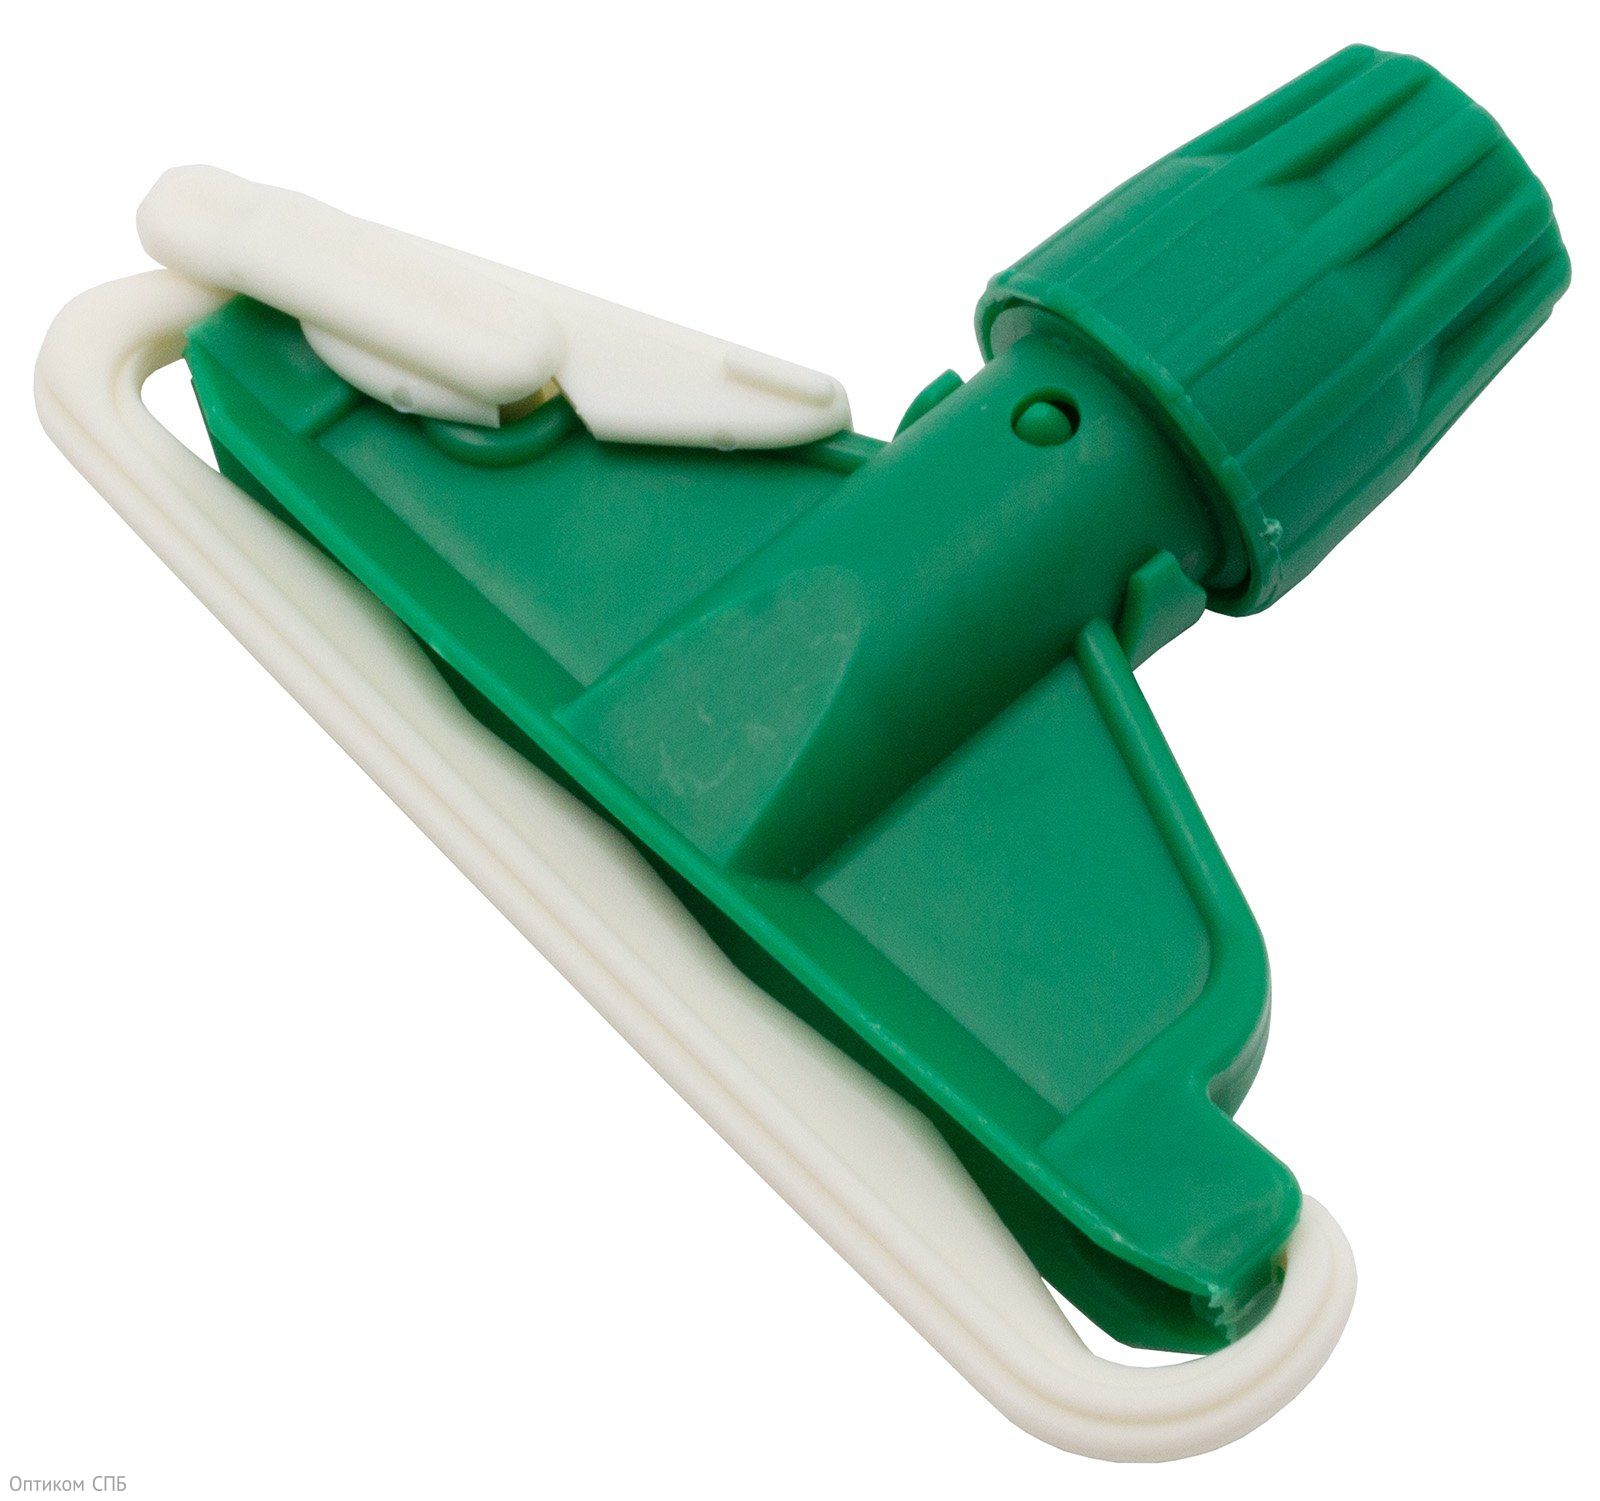 Зажим для мопа кентукки Optiline применяется для фиксации мопа кентукки. Выполнен из противоударного пластика зеленого цвета, устойчив к агрессивным моющим средствам. Предназначен для проведения влажной уборки внутренних помещений. Подходит для рукояток с фиксаторным креплением. Поставляется в индивидуальном прозрачном пакете.